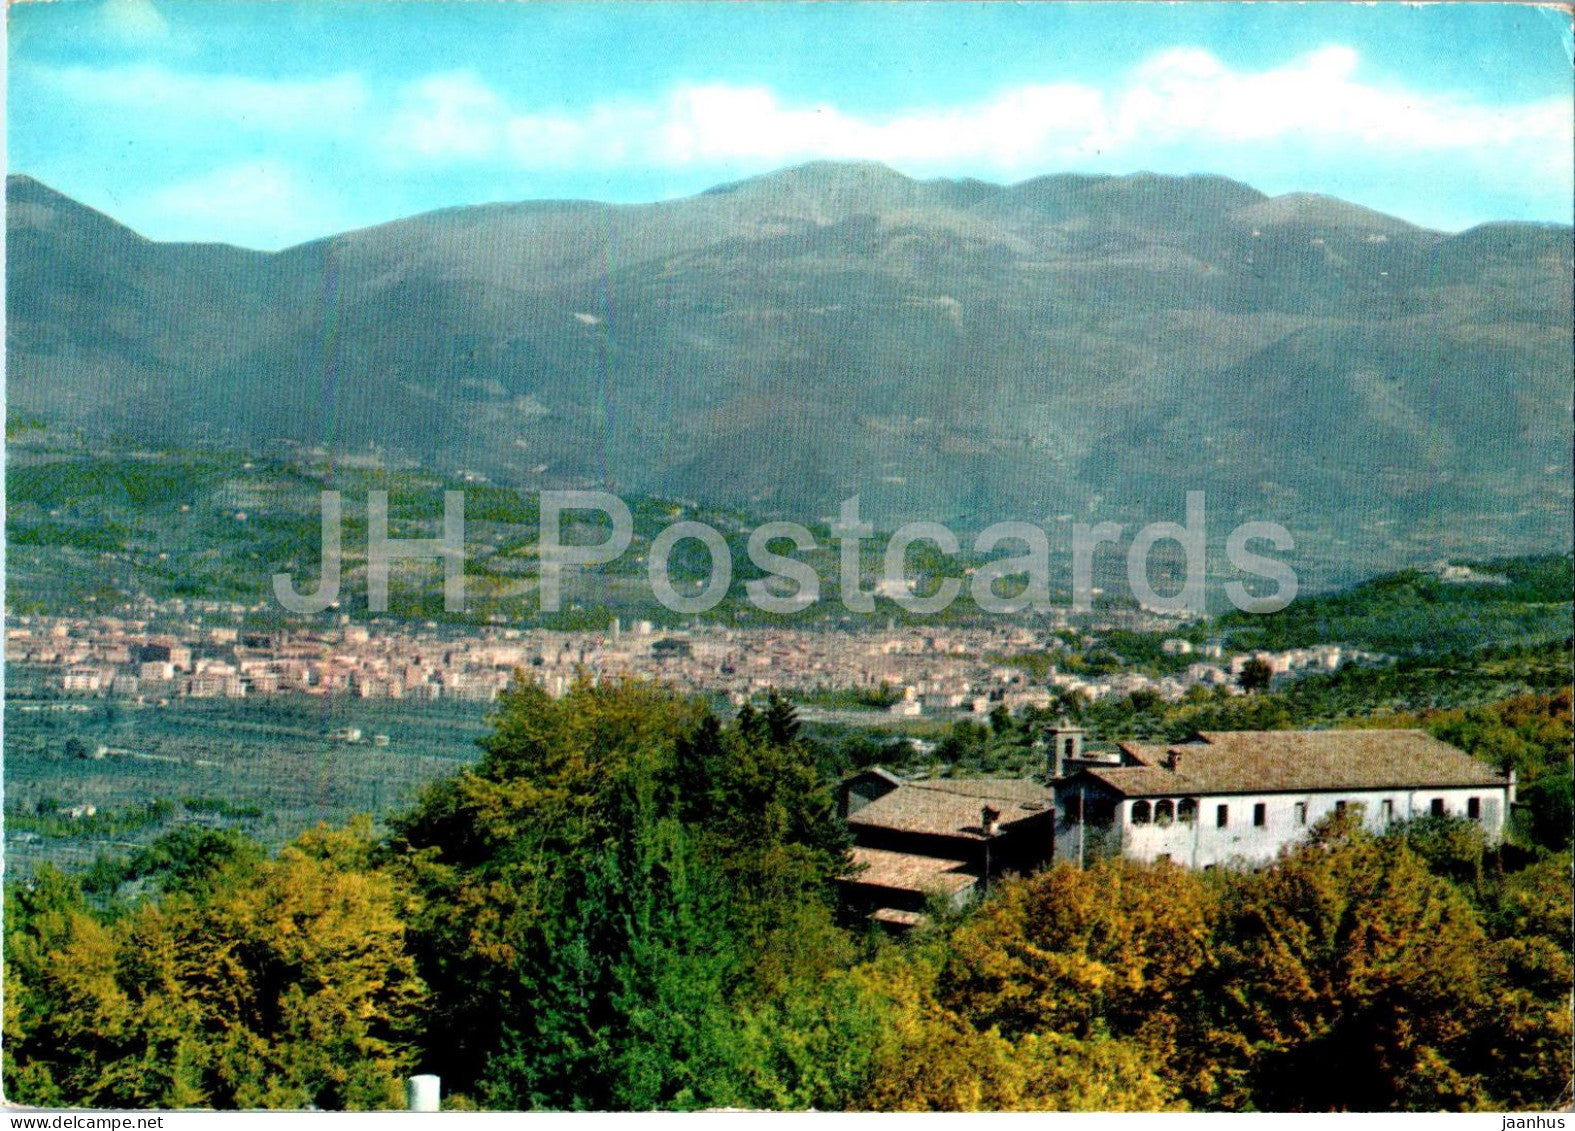 Santuario Francescano di Fontecolombo - Rieti - Monte Terminillo - Mount Terminillo - 1966 - Italy - used - JH Postcards